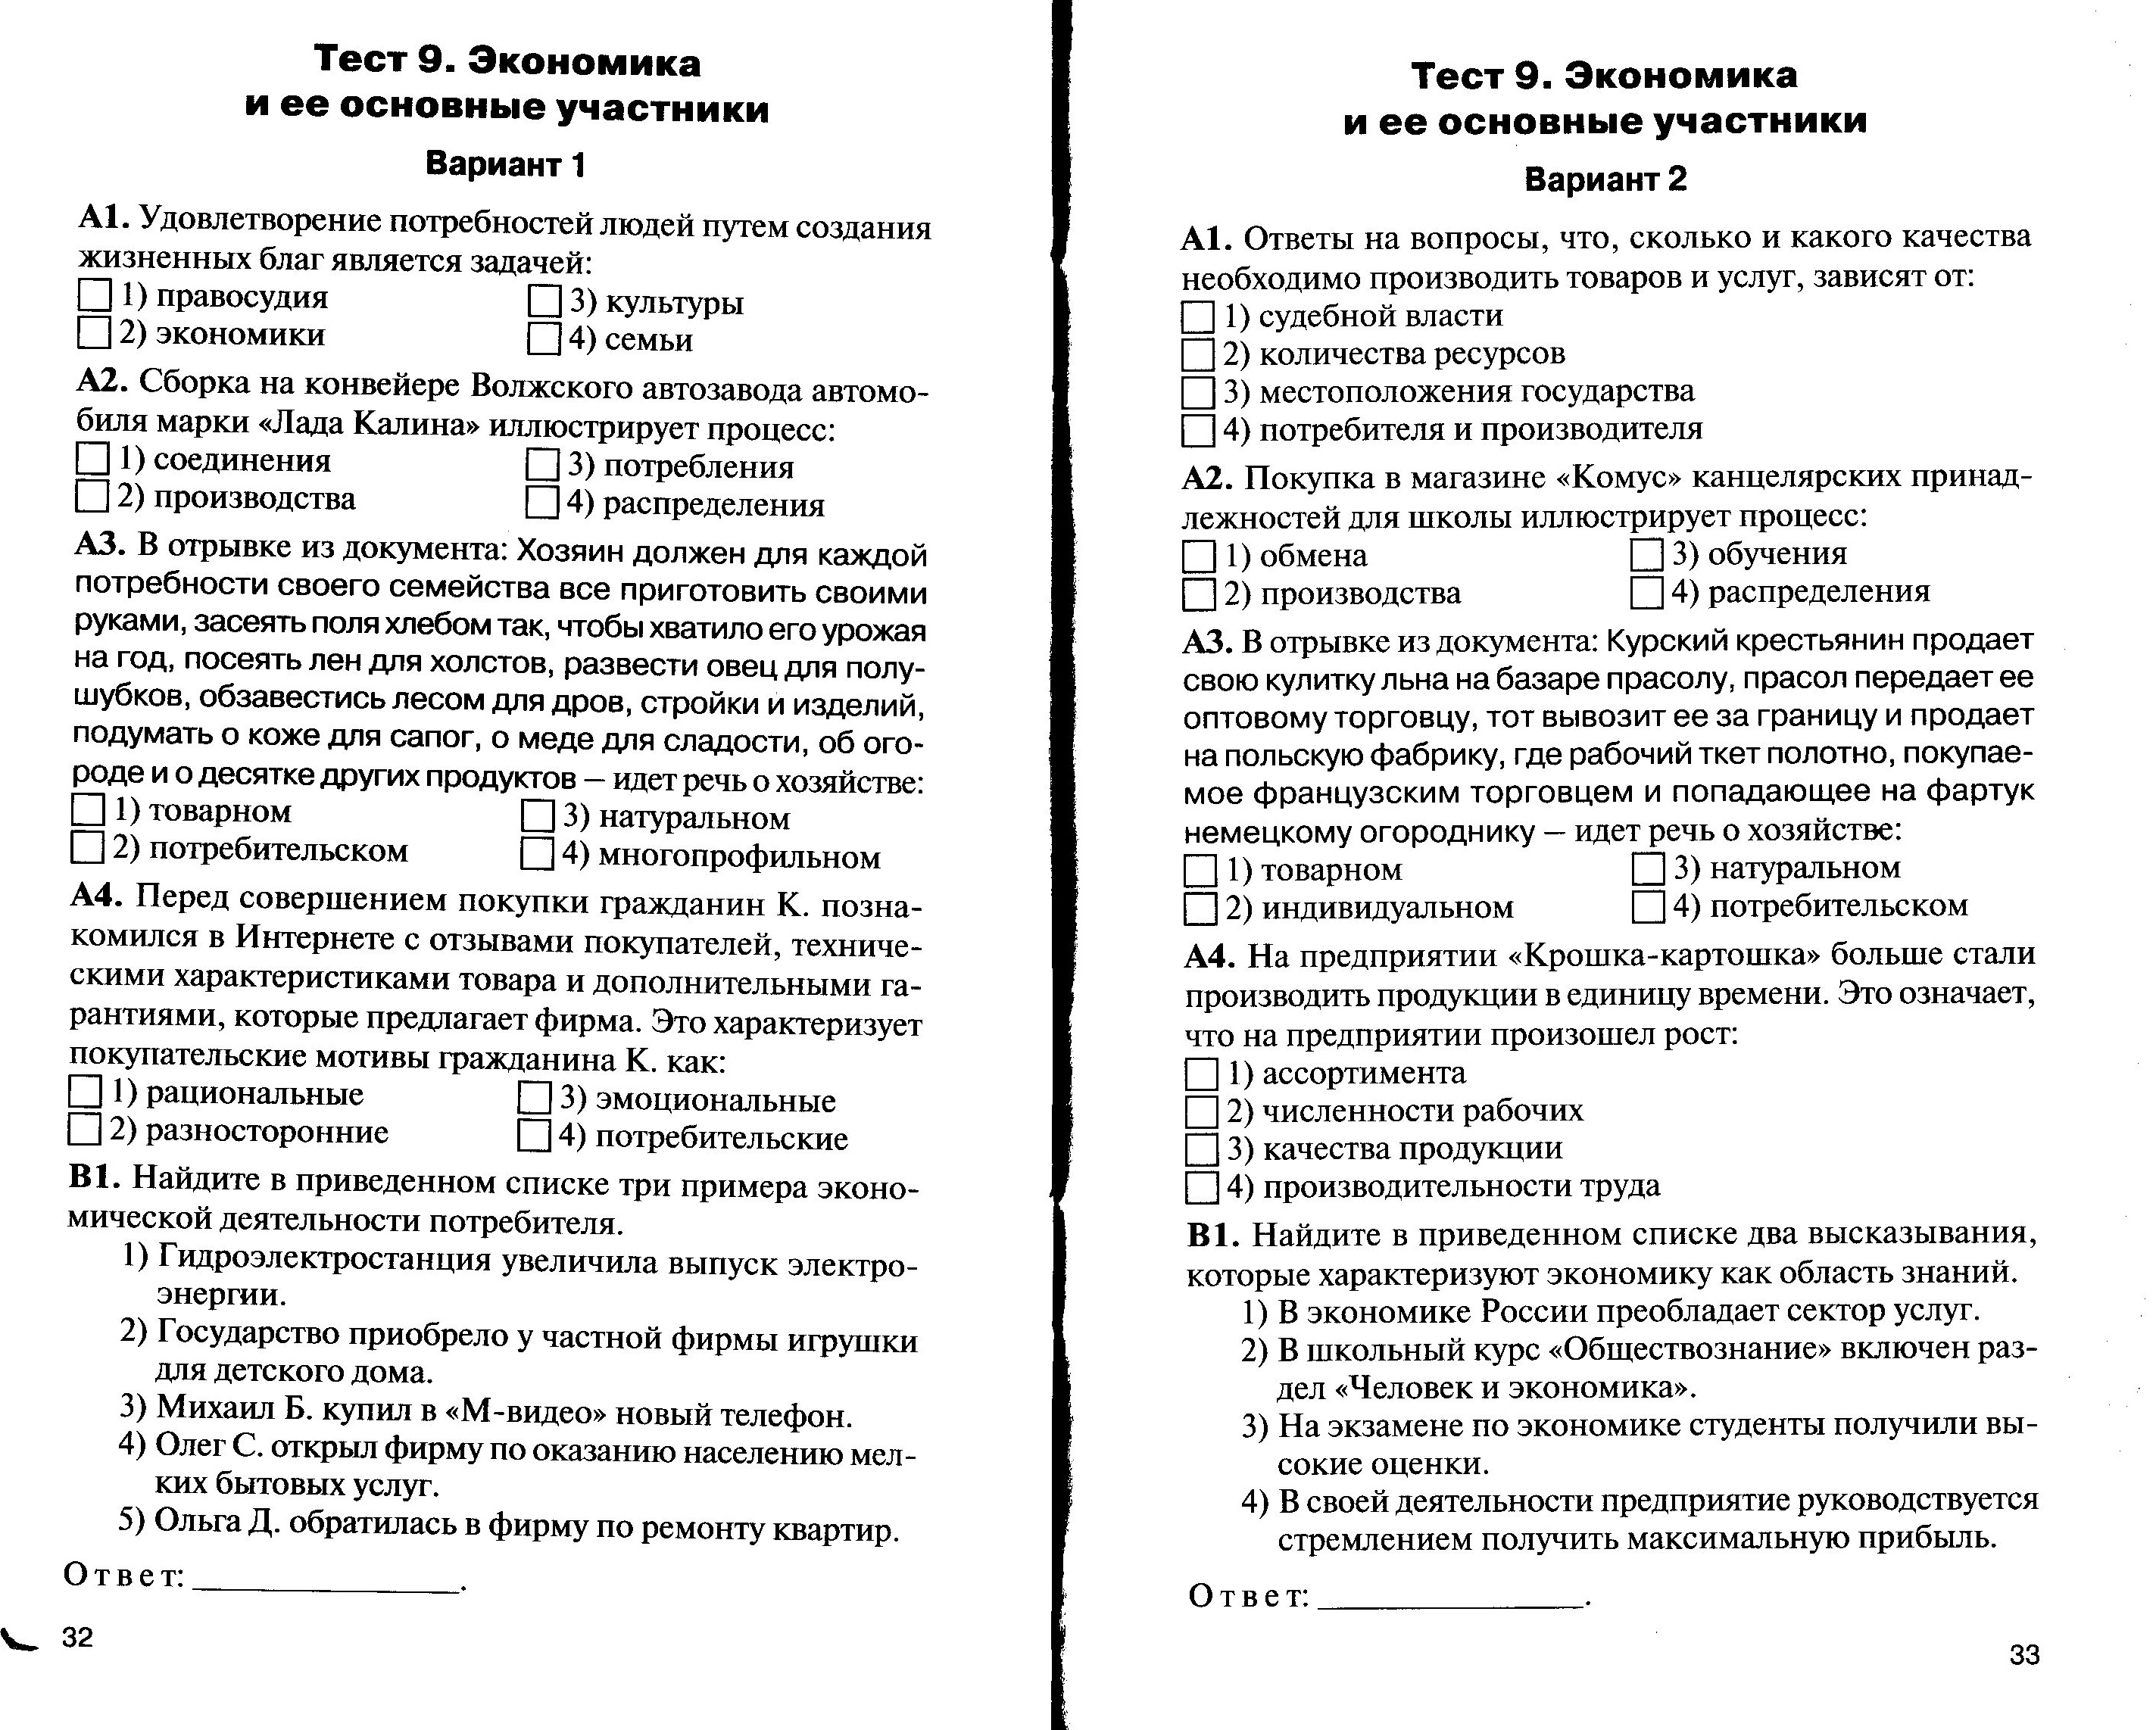 Тест 18 экономика 11 класс